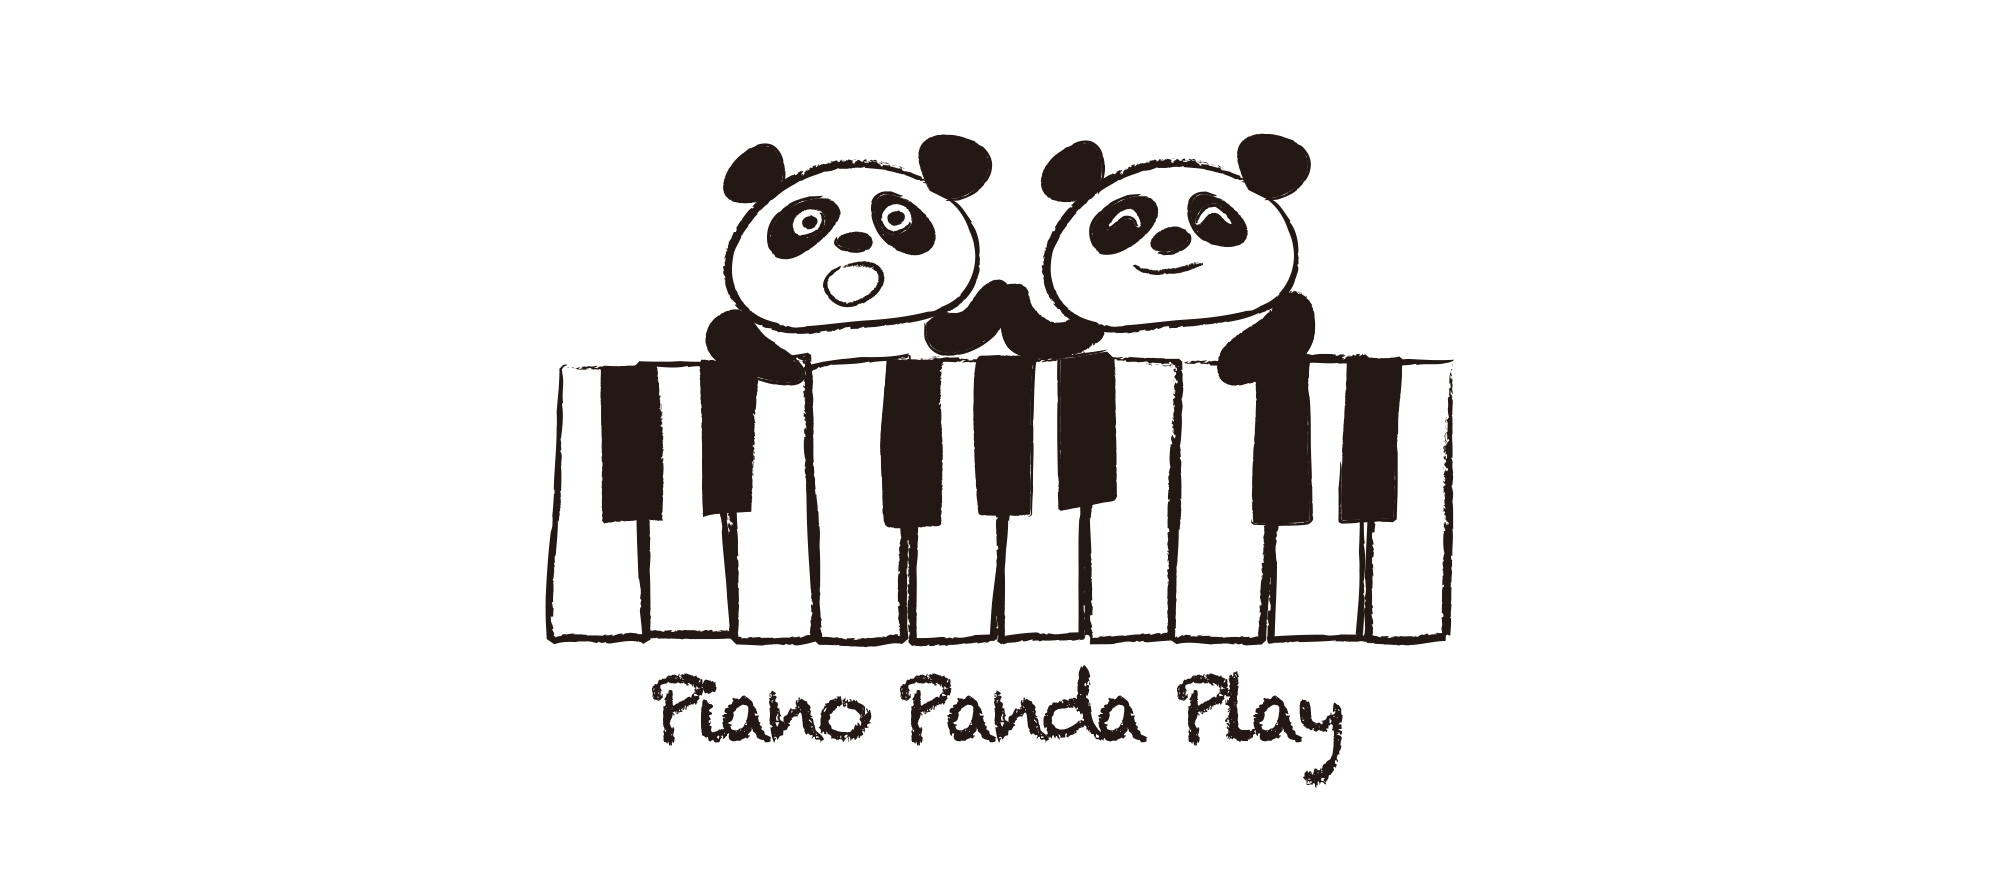 pianopandaplay